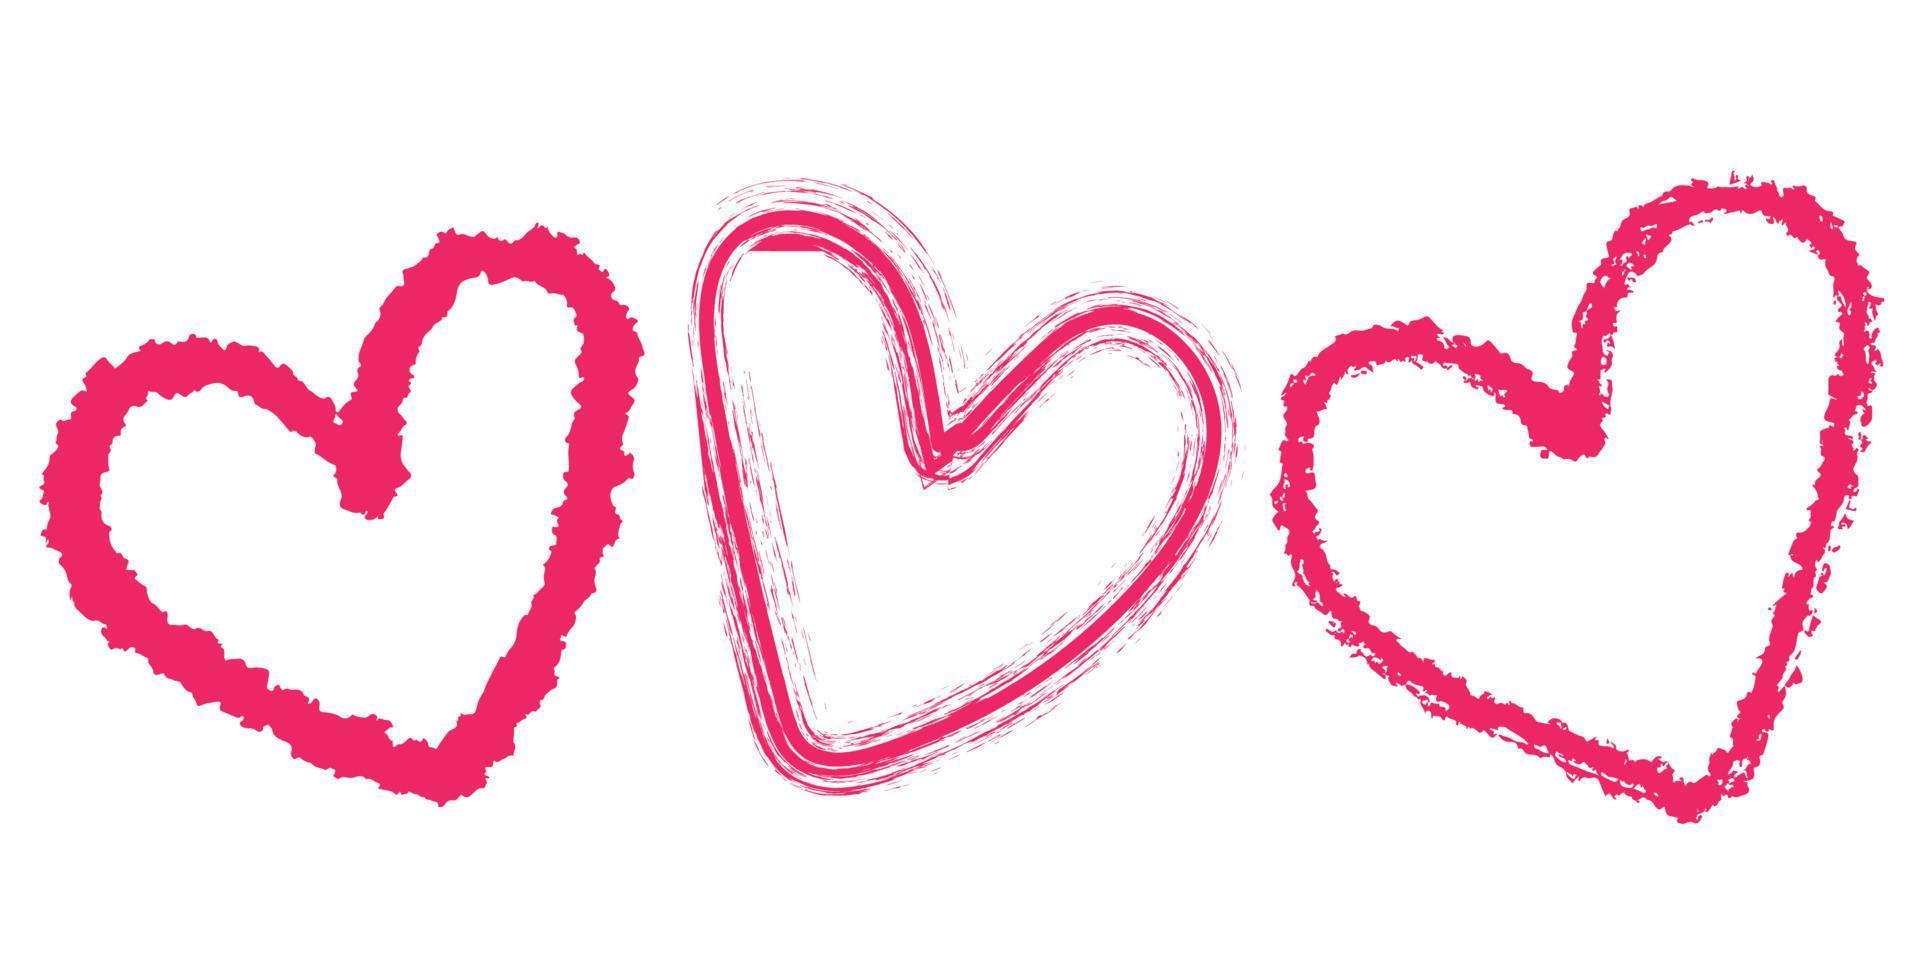 impostato di cuore disegnato a mano e scarabocchio per elemento, amore, san valentino, carta vettore